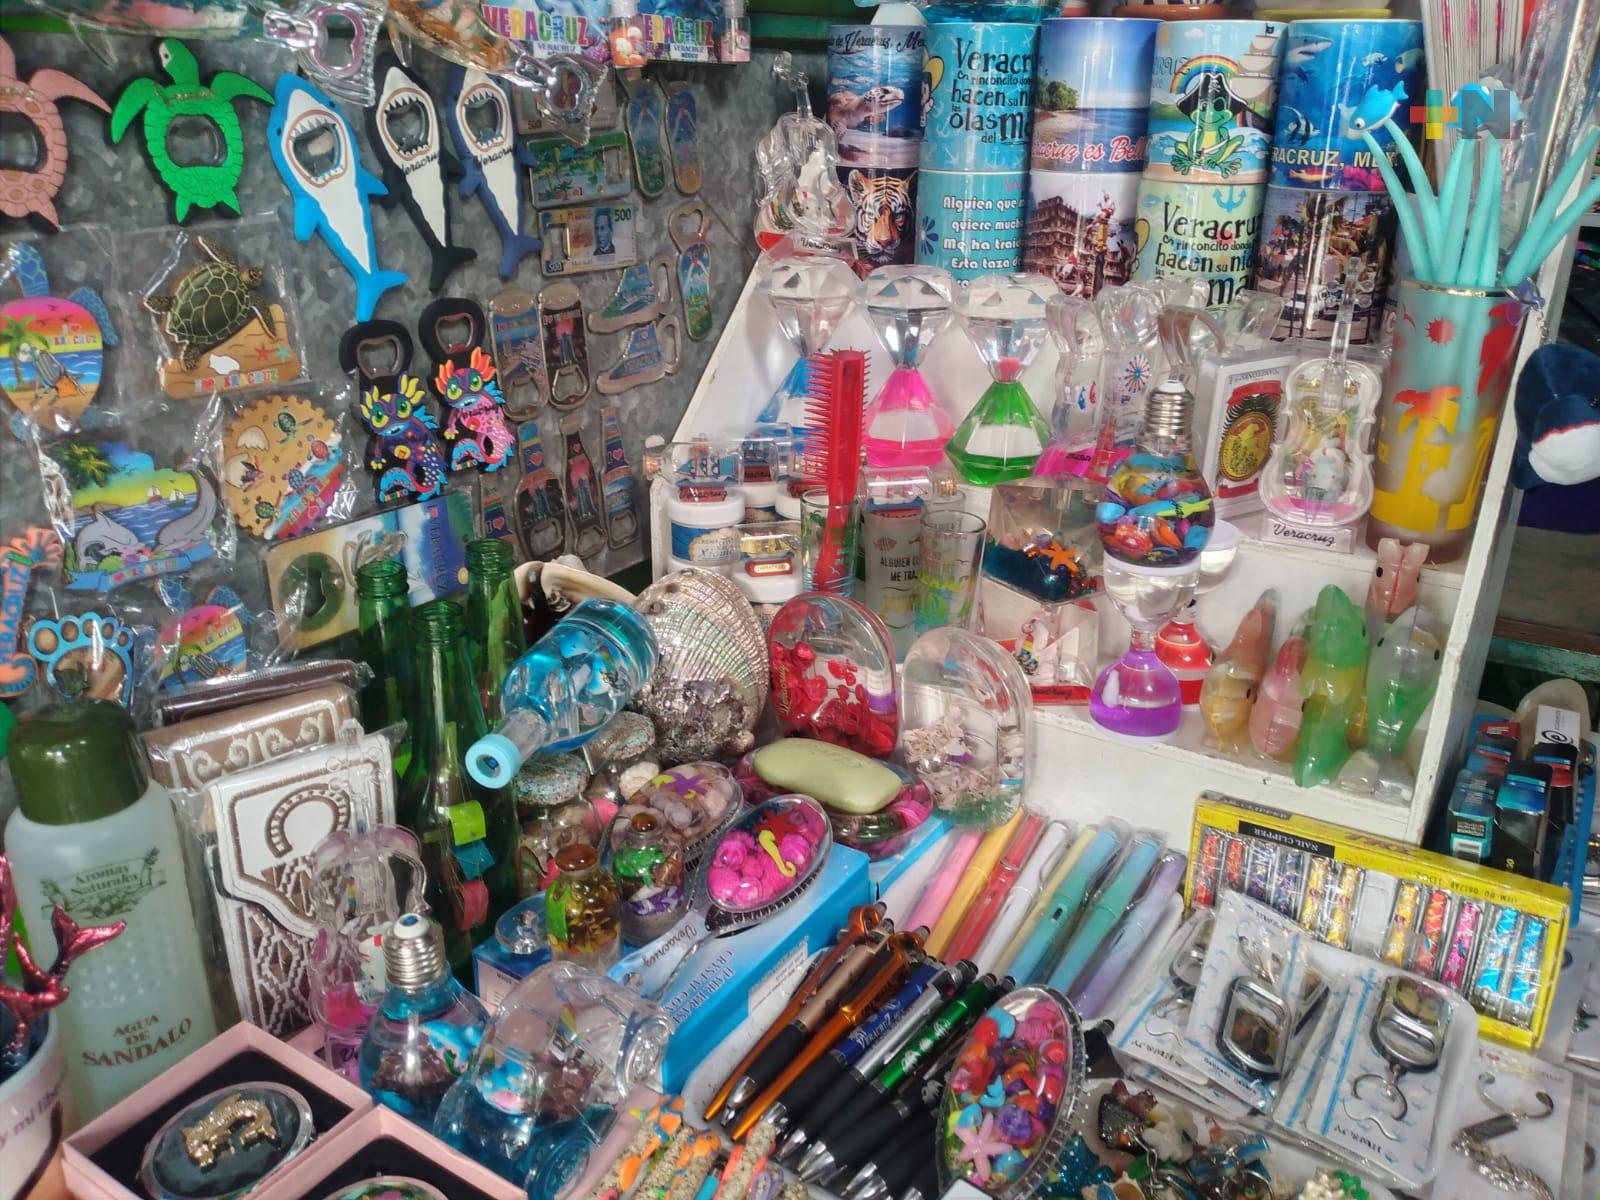 Comerciantes de artesanías en Veracruz puerto esperan ver pronto aumento en ventas